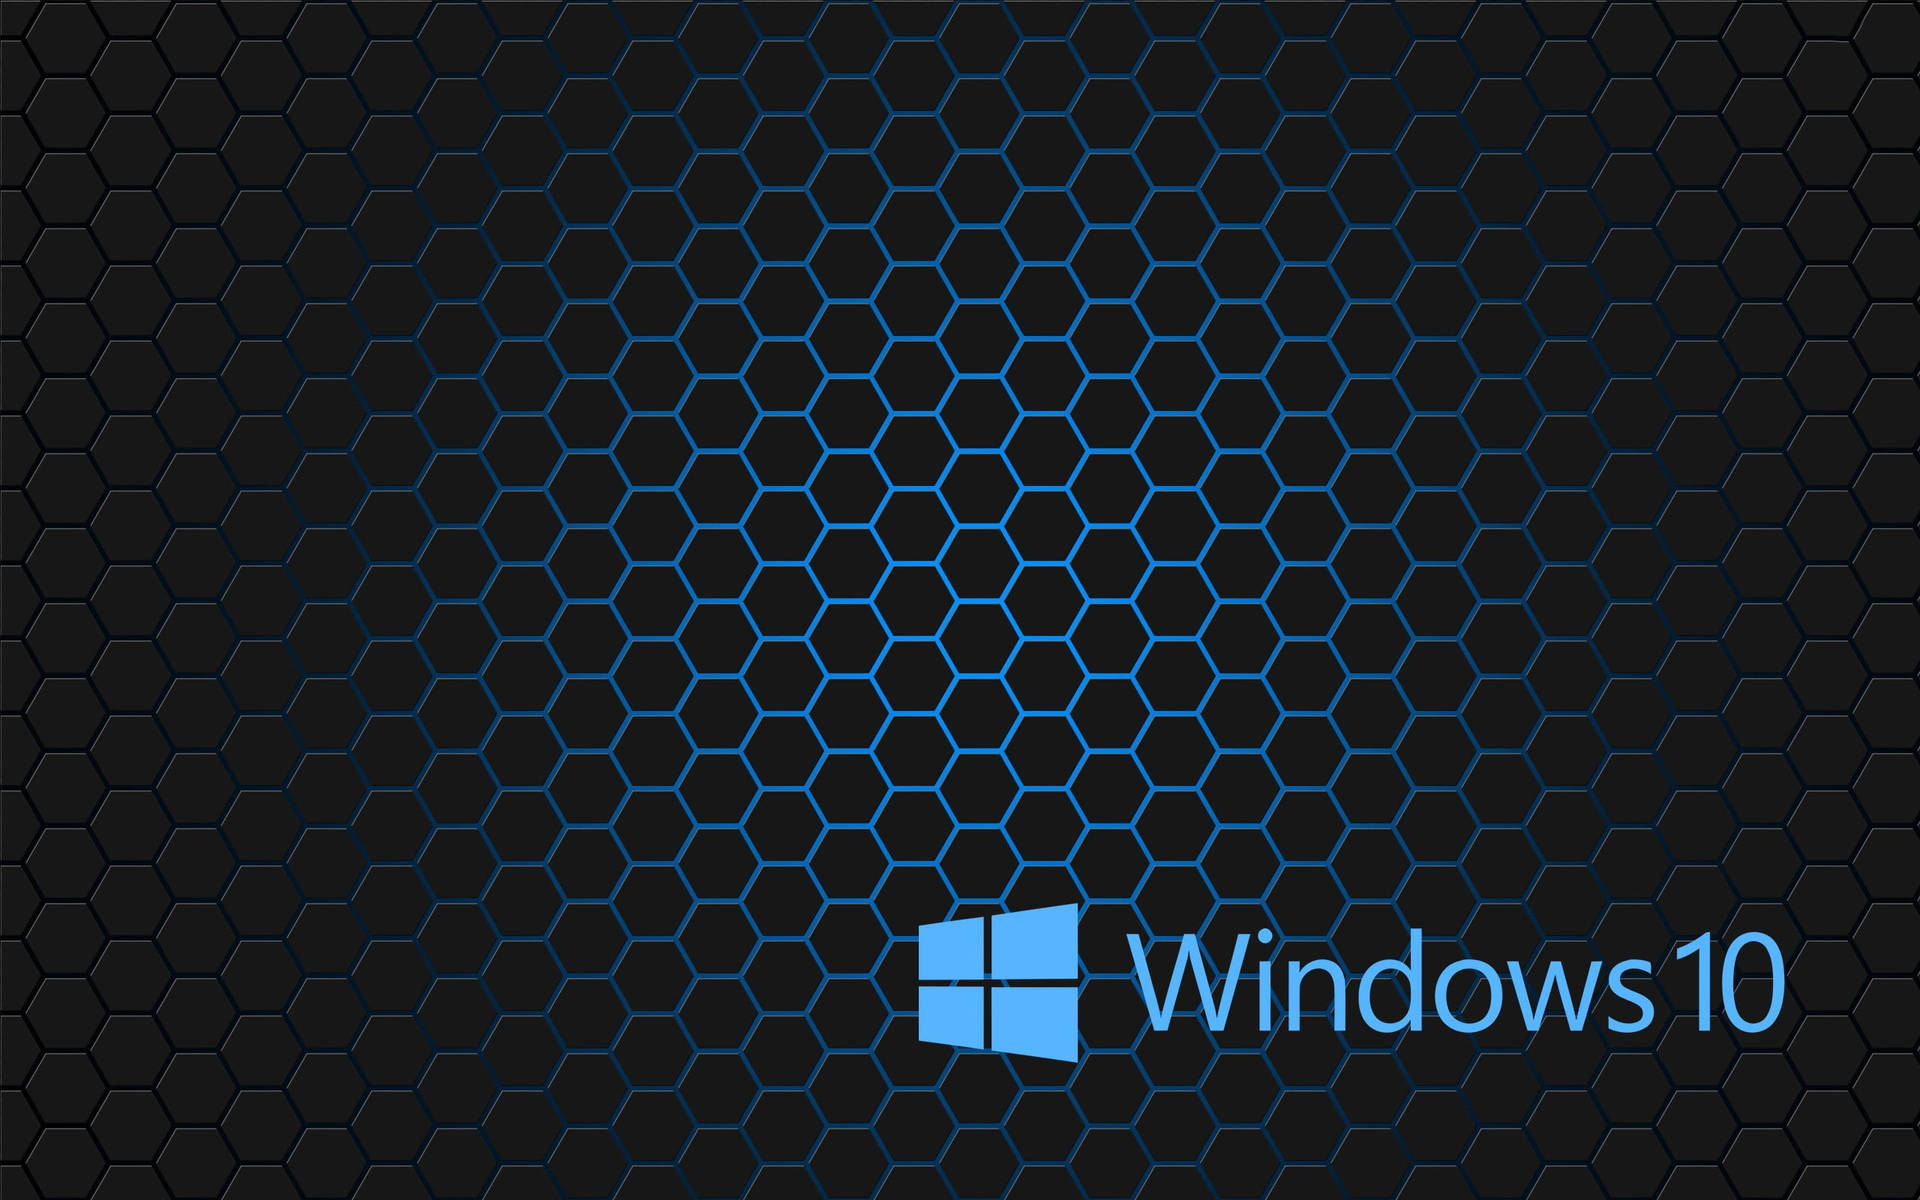 Hexagon Tiles Windows 10 Theme Wallpaper